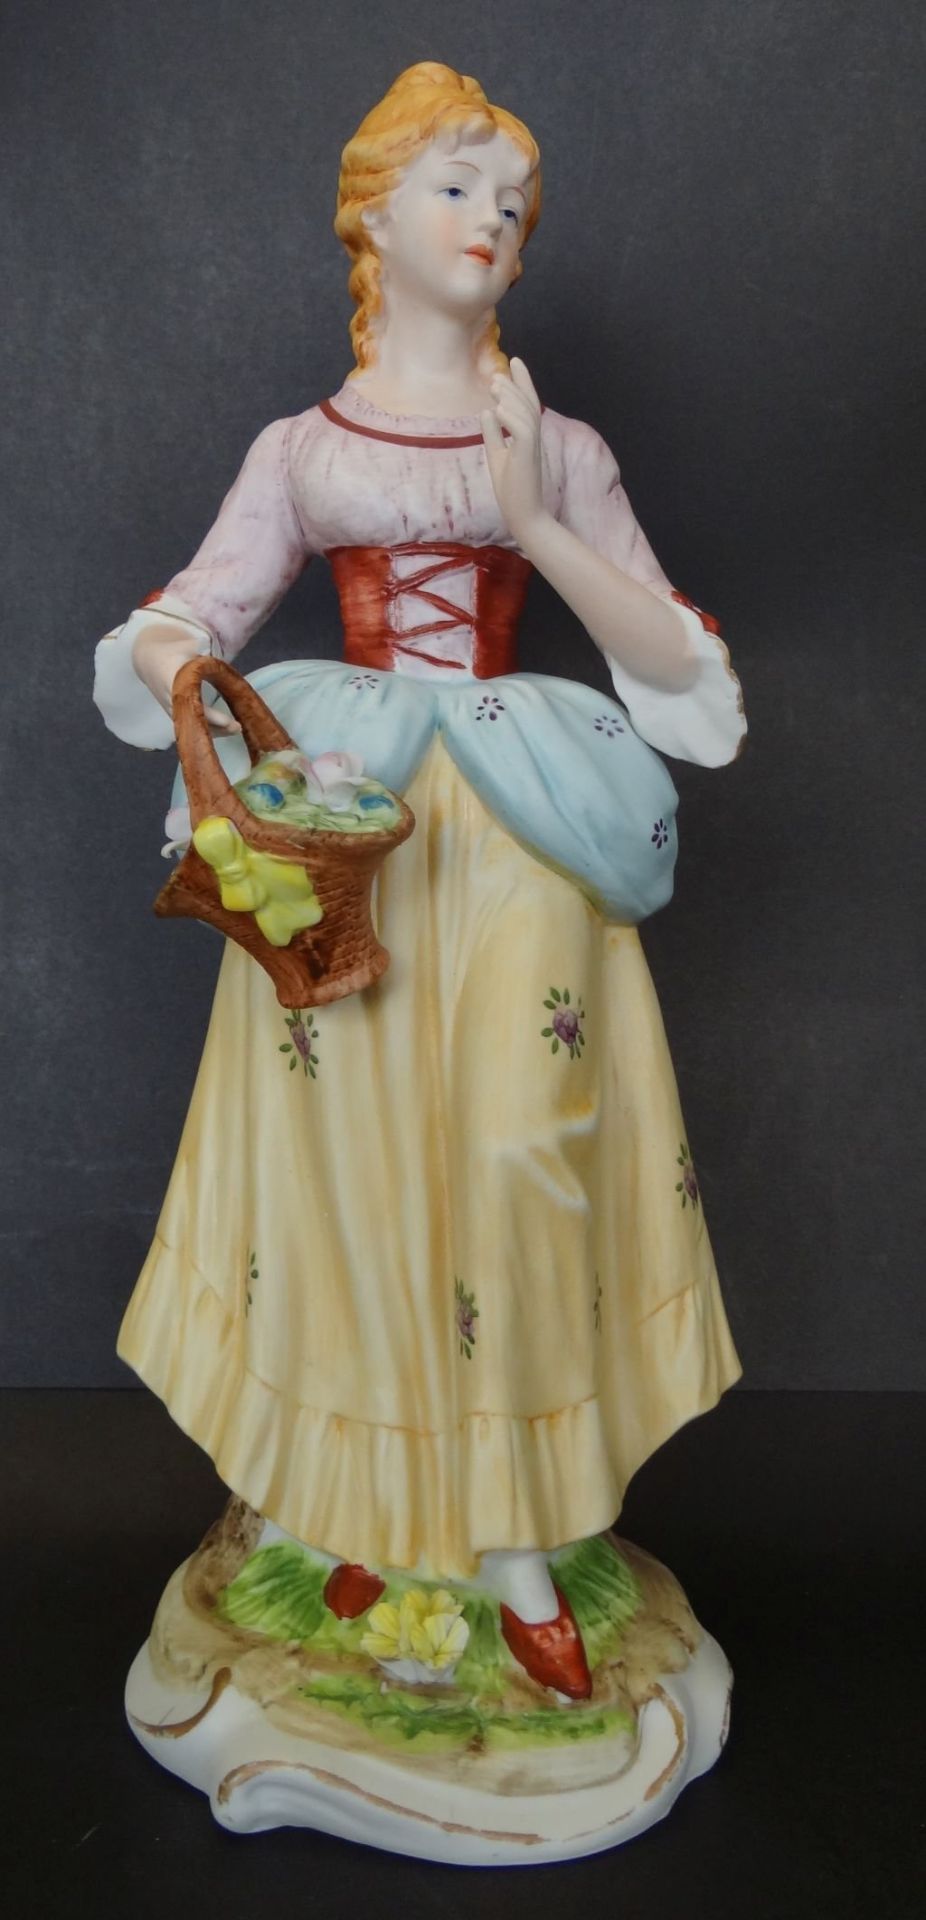 hohe Bisquitporzellan-Figur "Mädchen mit Blumenkorb", ein Daumen beschädigt, linke Hand geklebt,